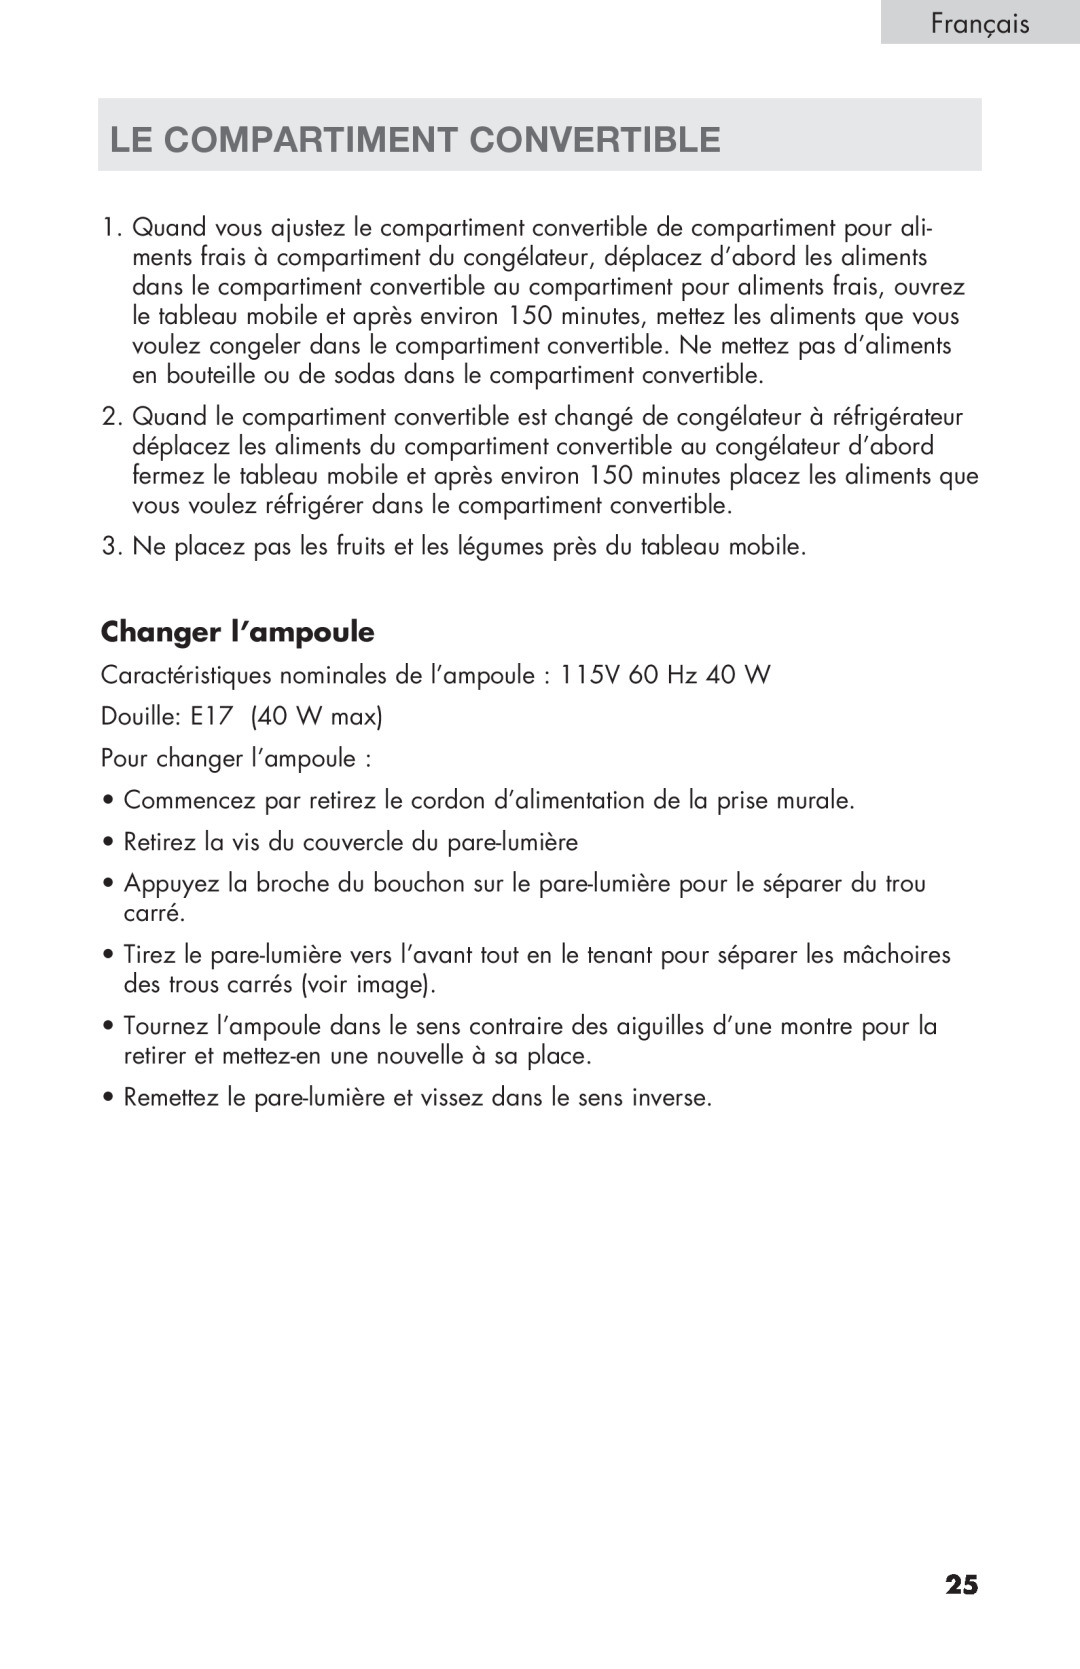 Haier PRFS25 user manual Le Compartiment Convertible, Changer l’ampoule 